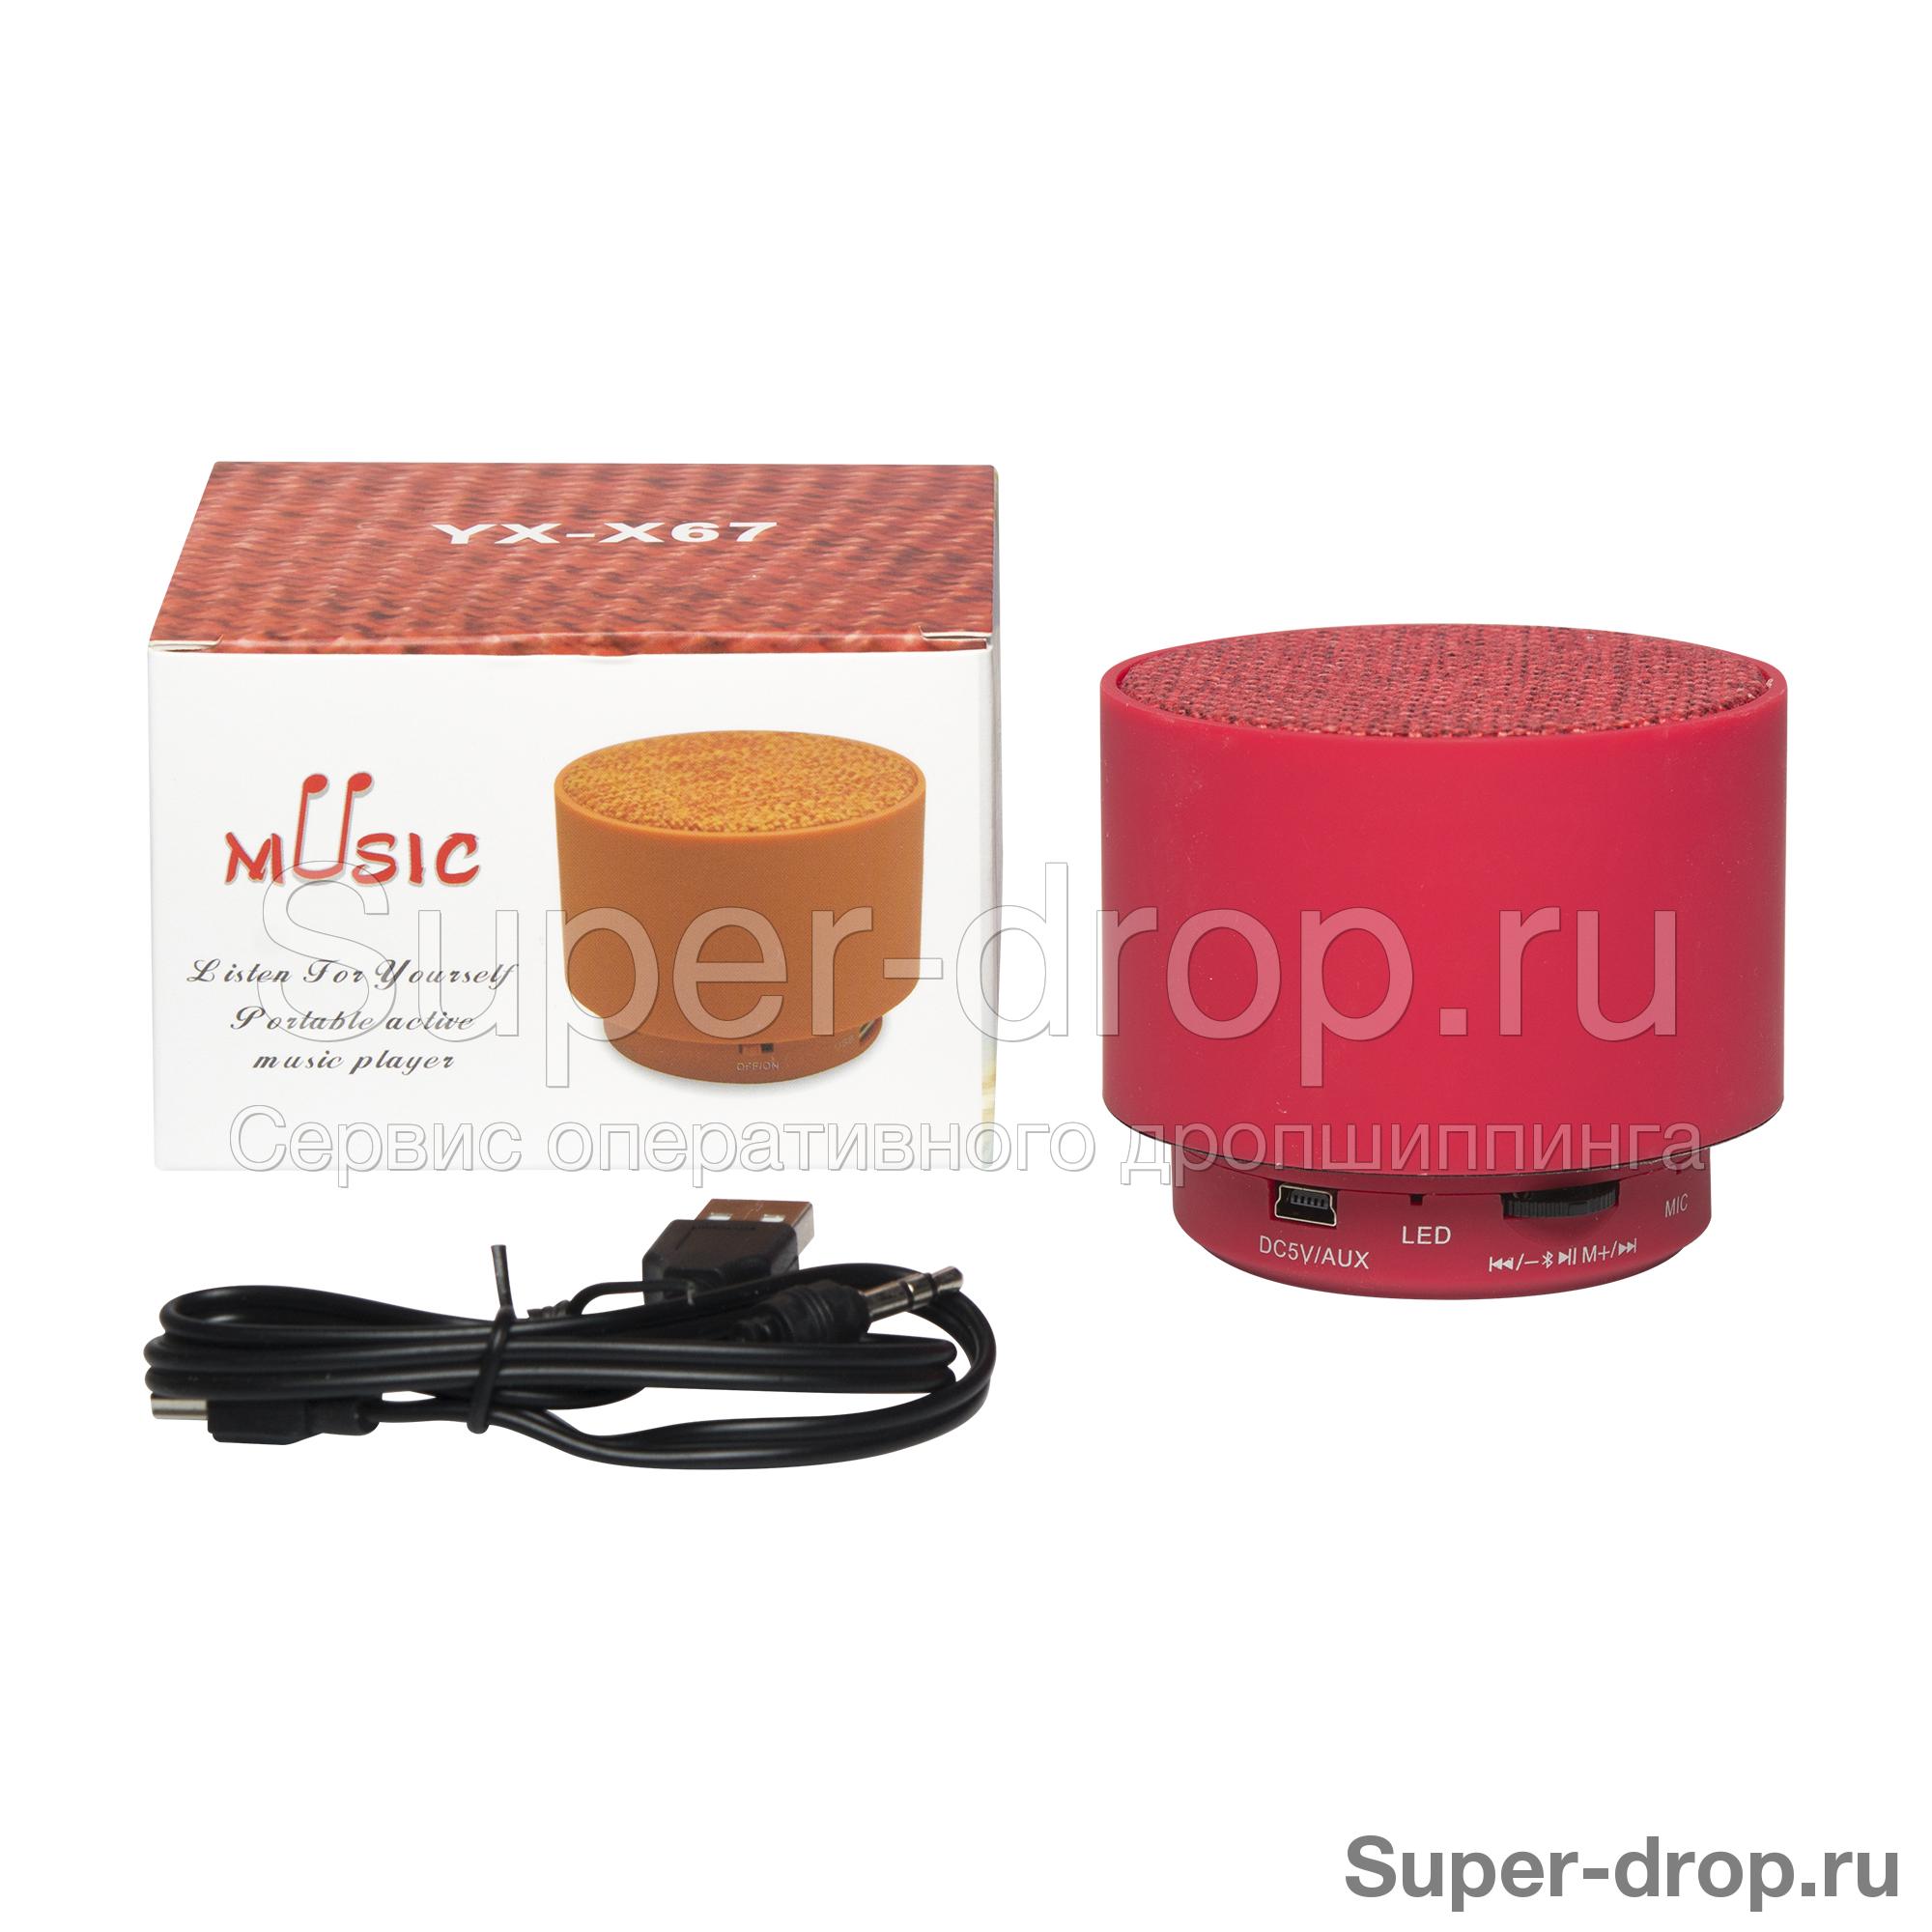 Портативная колонка Music Mini Speaker YX-X67